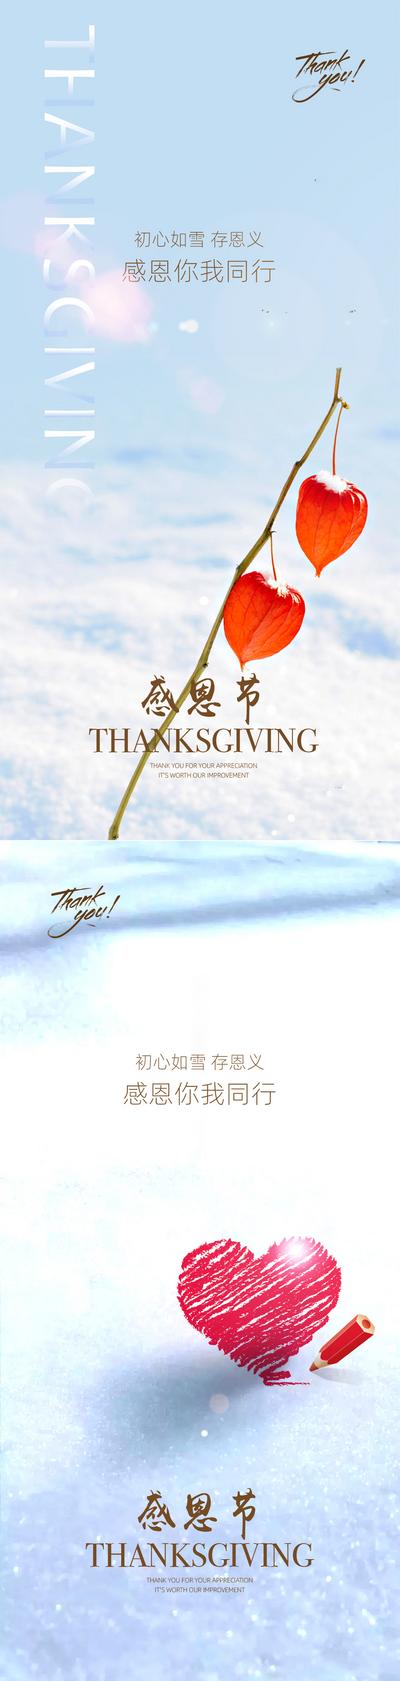 南门网 海报   系列  感恩节   公历节日   红心   雪地  树叶 